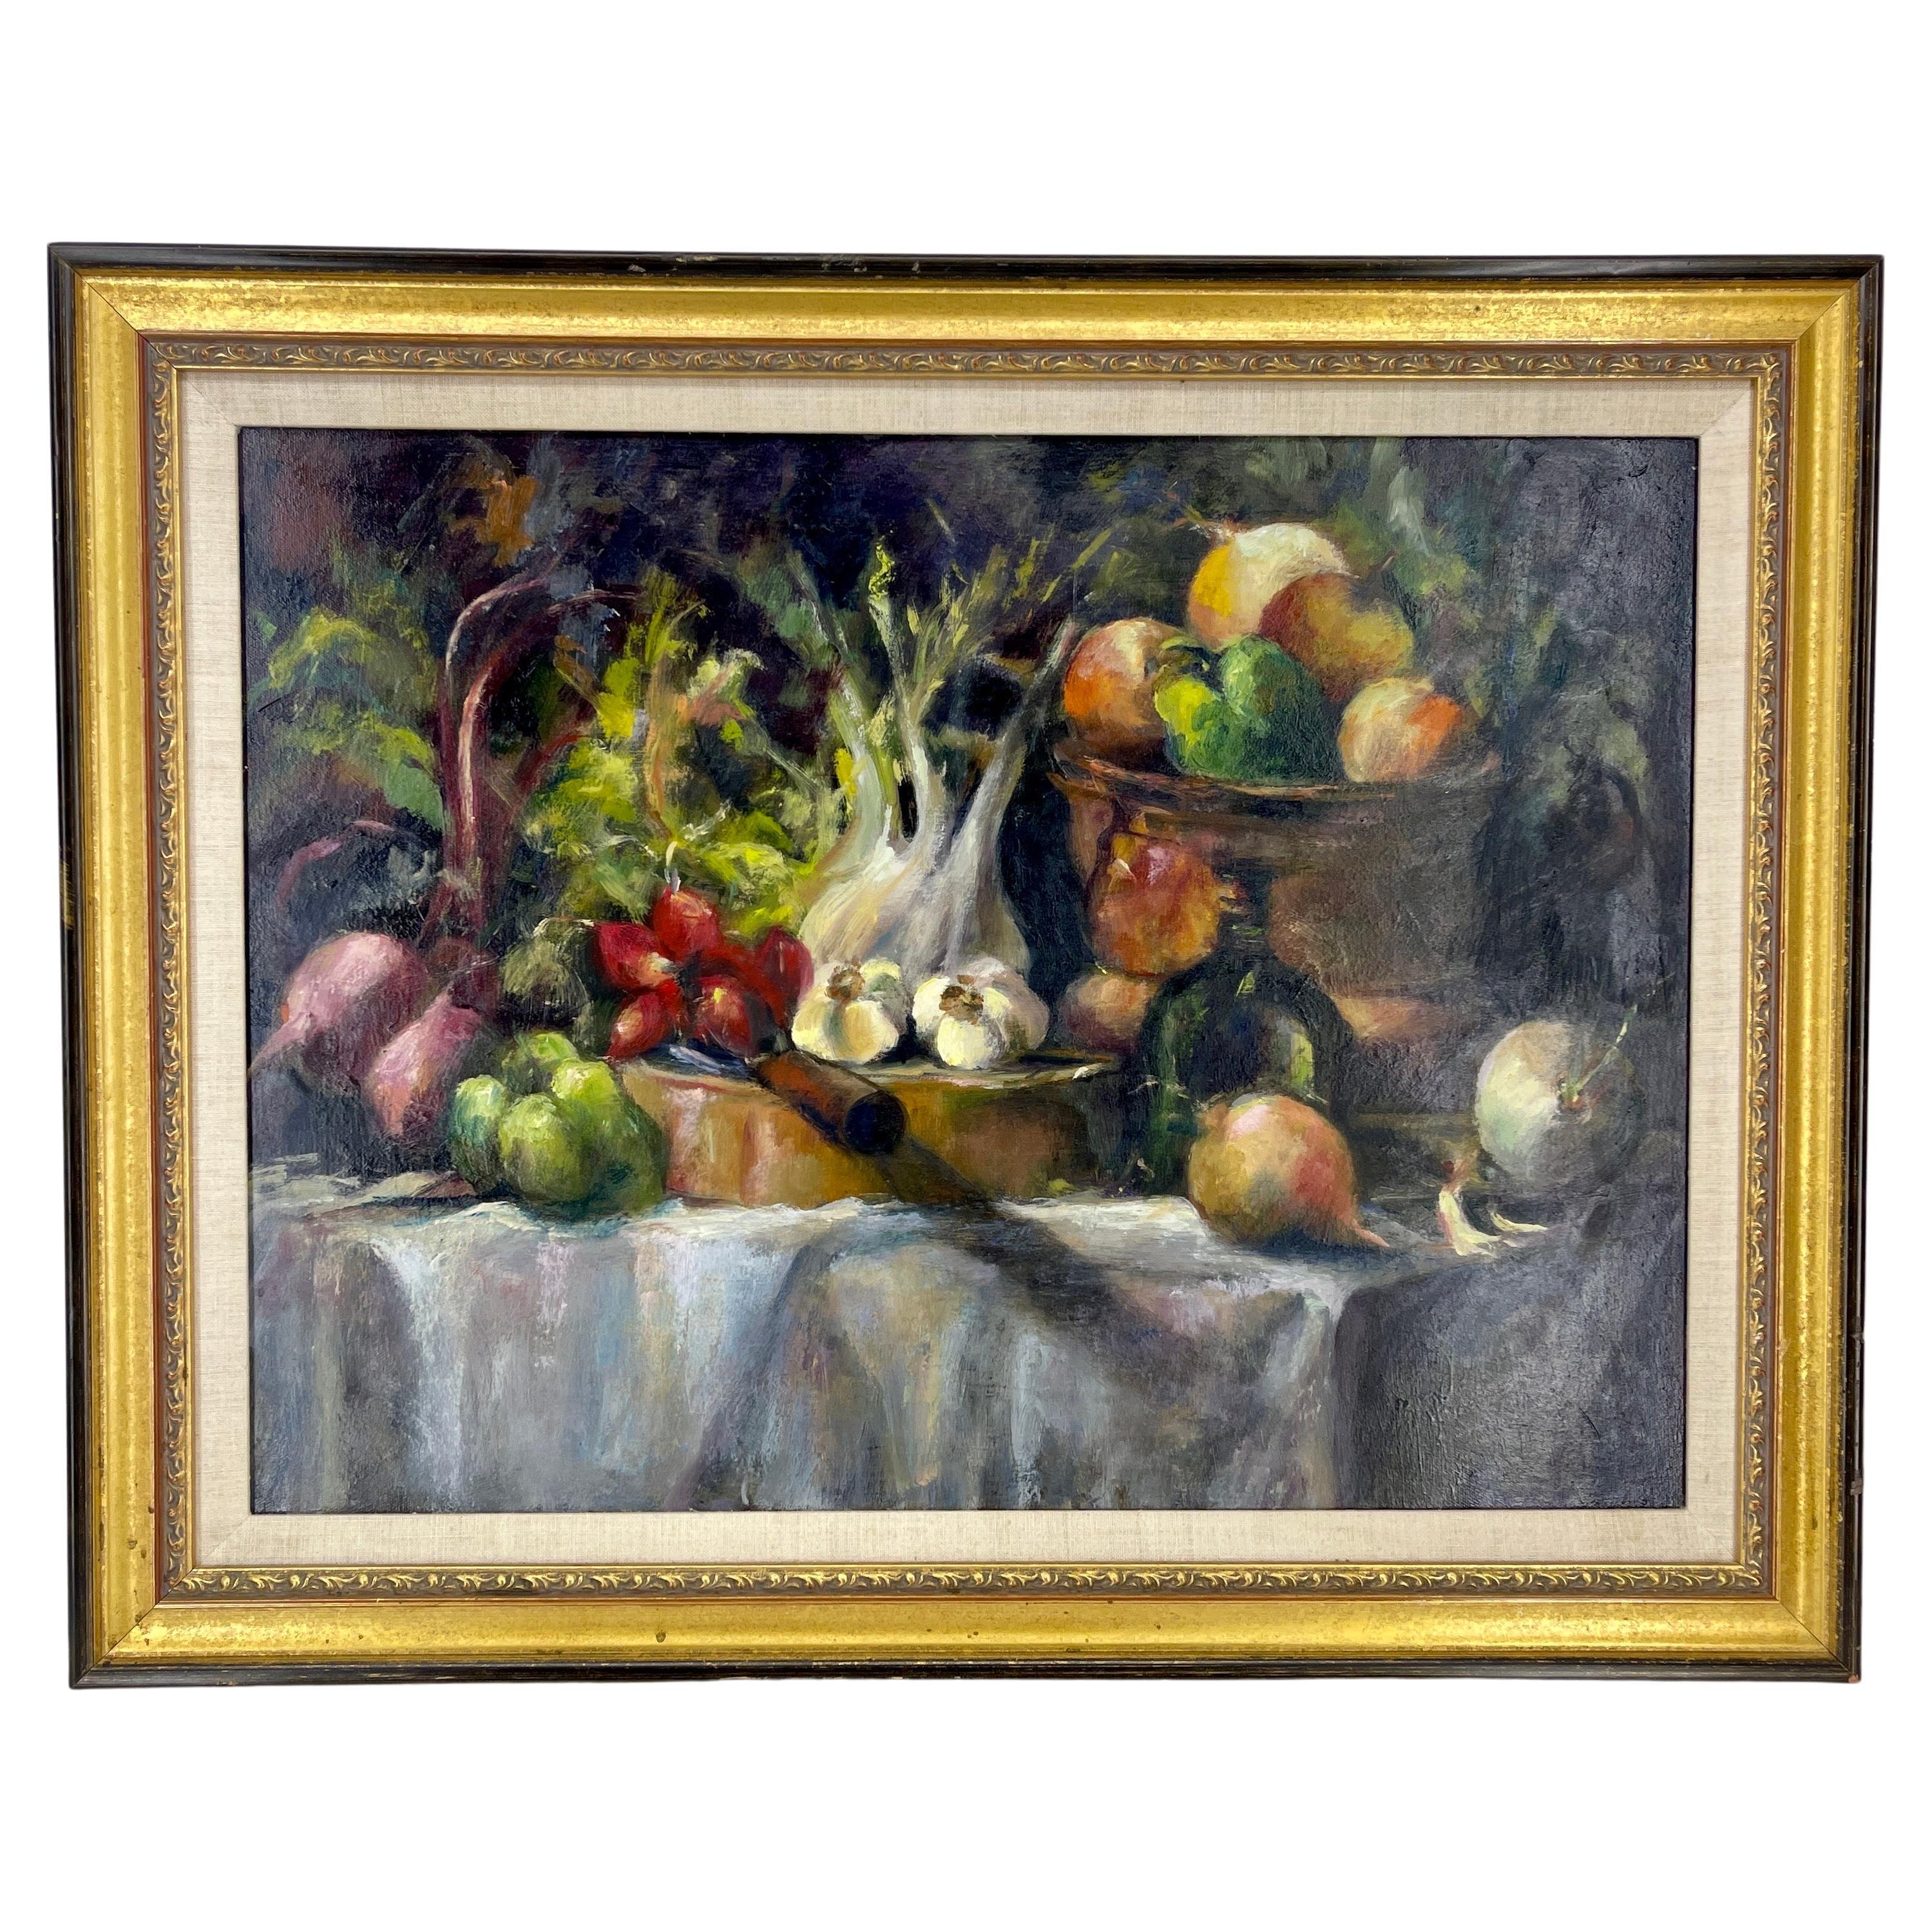 Nature morte encadrée, peinture à l'huile sur toile avec une variété de légumes, France

Nature morte du 20e siècle représentant une abondance de légumes sur une table drapée d'une nappe blanche. Des oignons, des poivrons rouges et verts sortent de